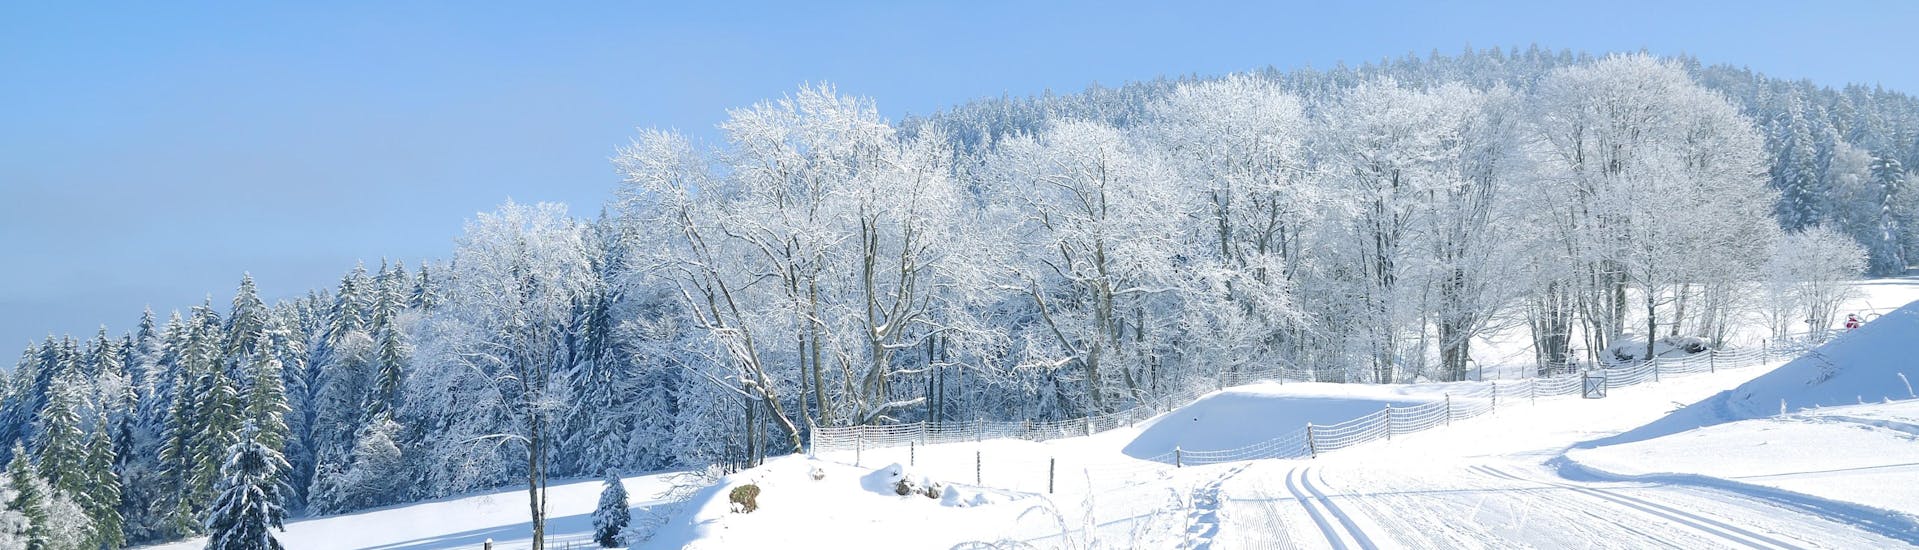 Image des pistes dans la forêt bavaroise près de Sankt Englmar où vous pouvez réserver des leçons de ski.